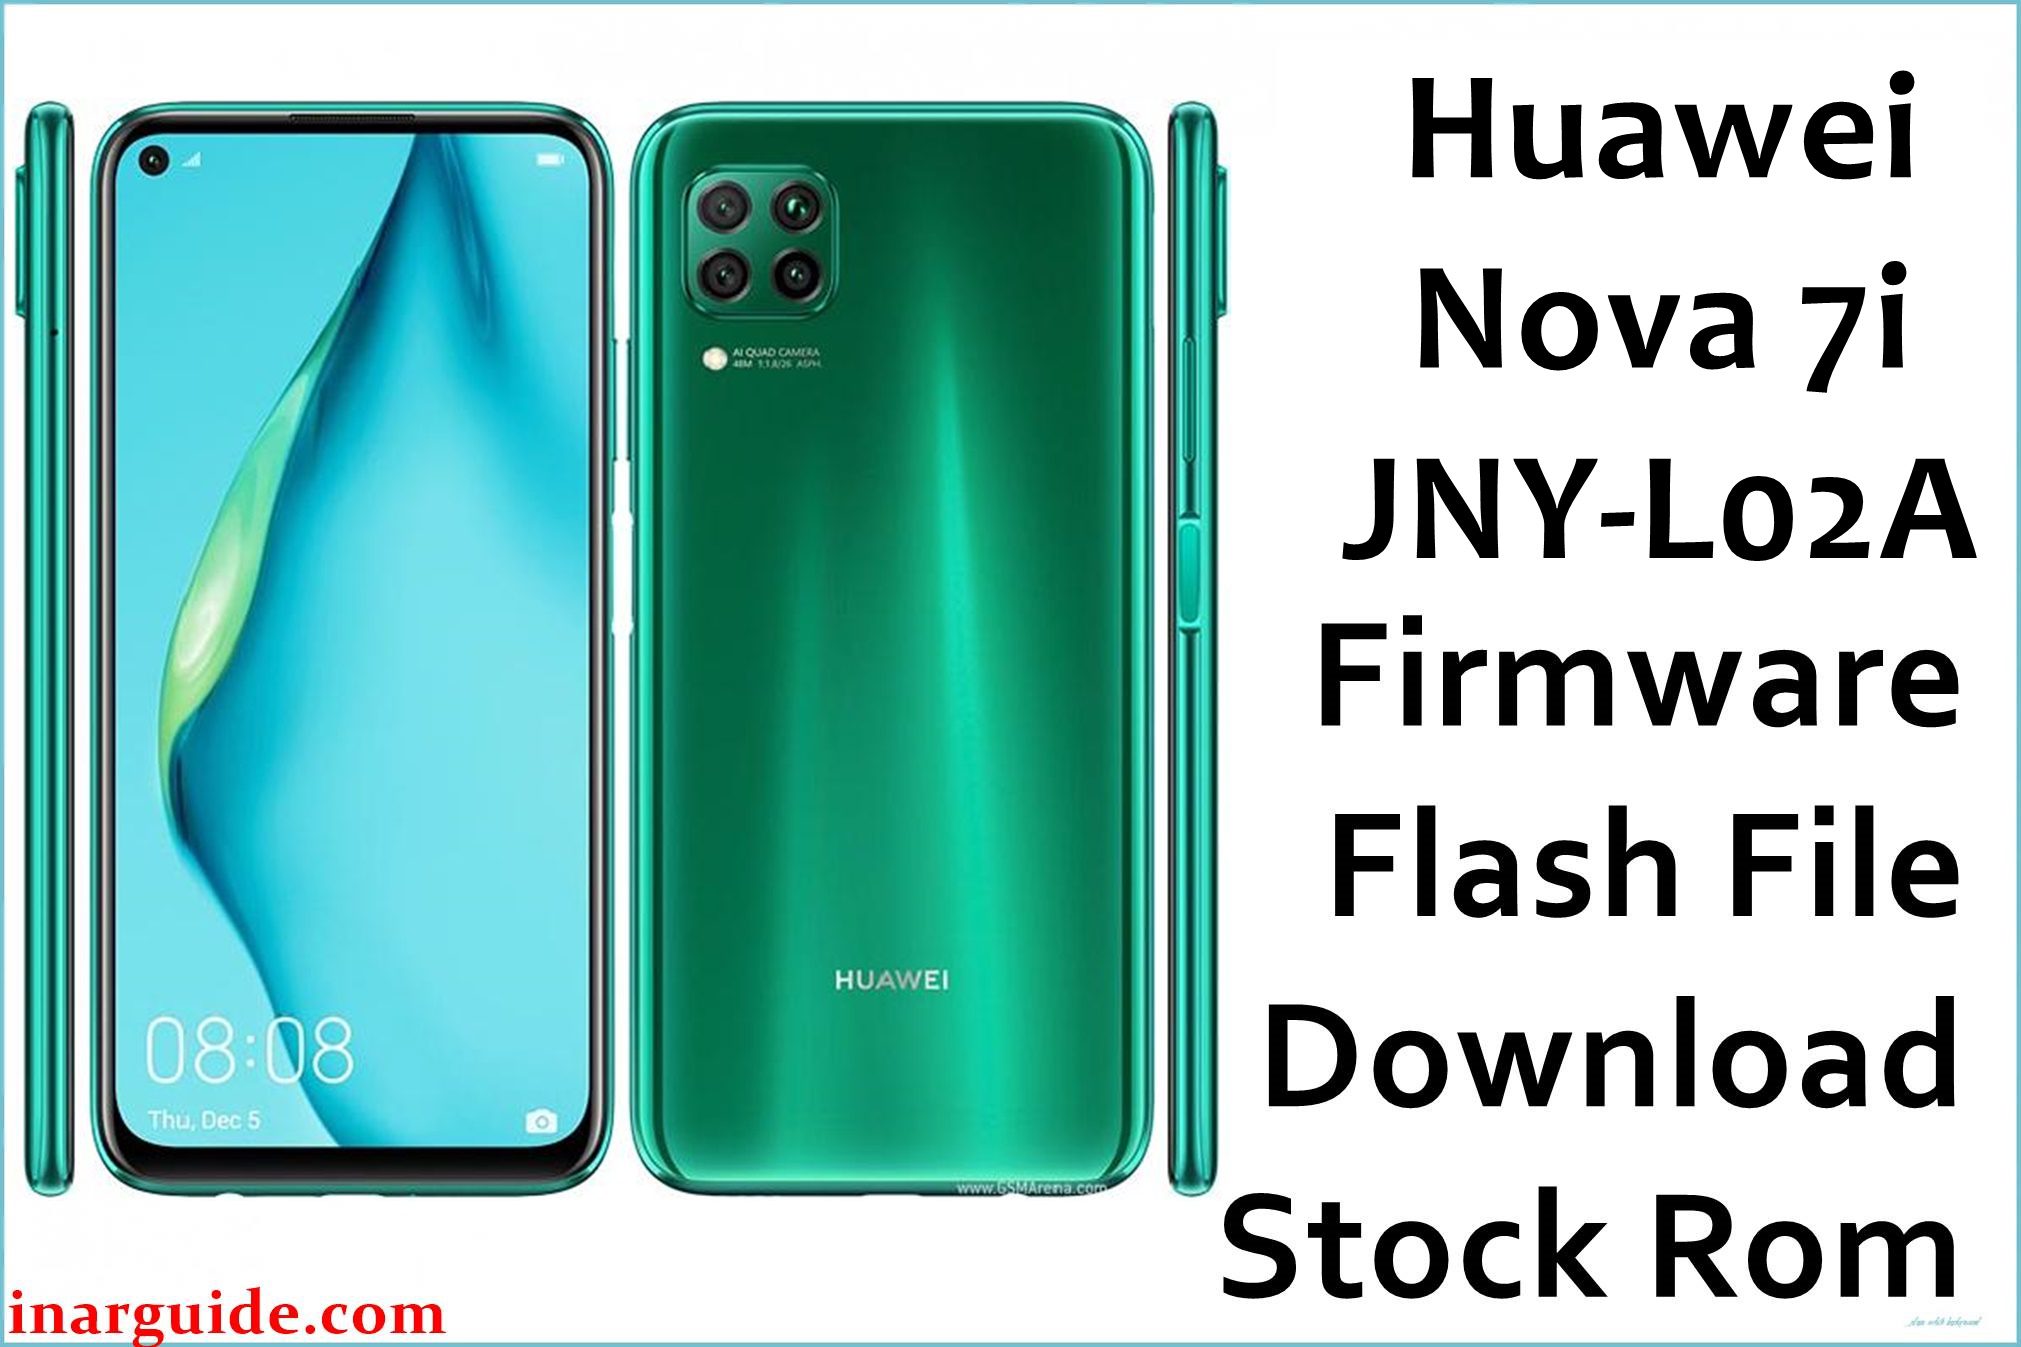 Huawei Nova 7i JNY L02A